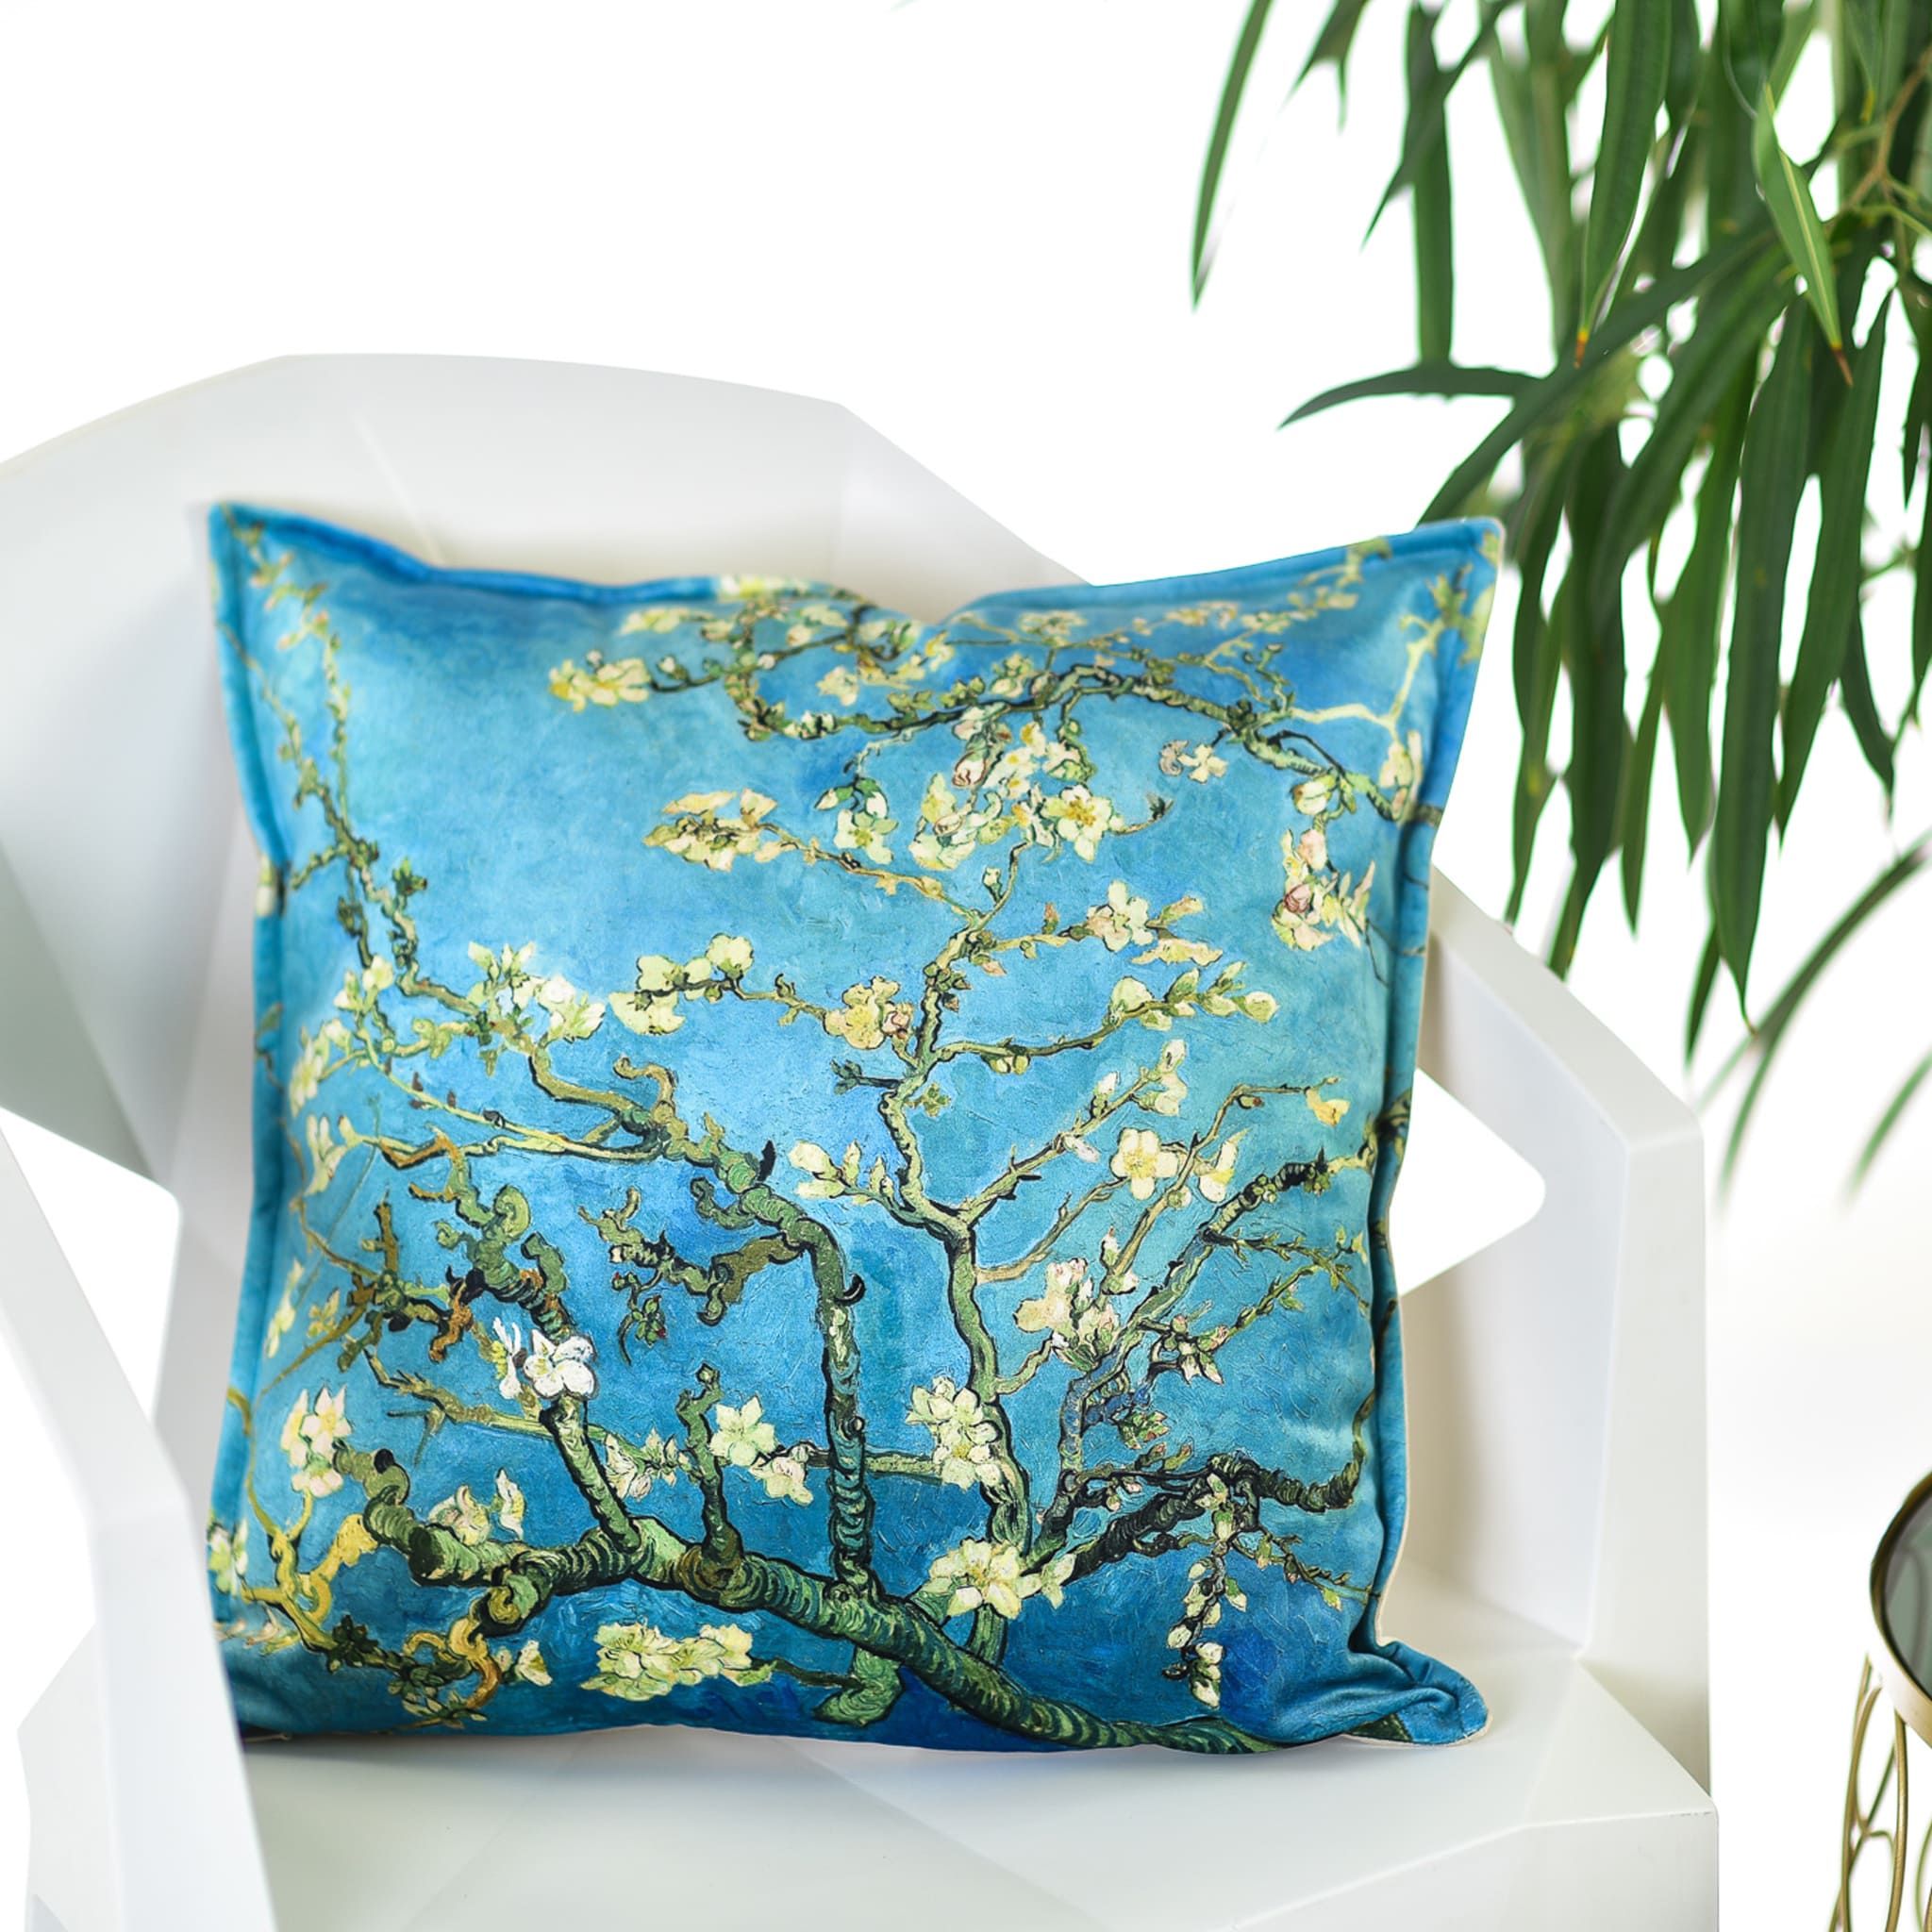 Dekoratyvinė pagalvėlė Vincent van Gogh "Almond Blossom"